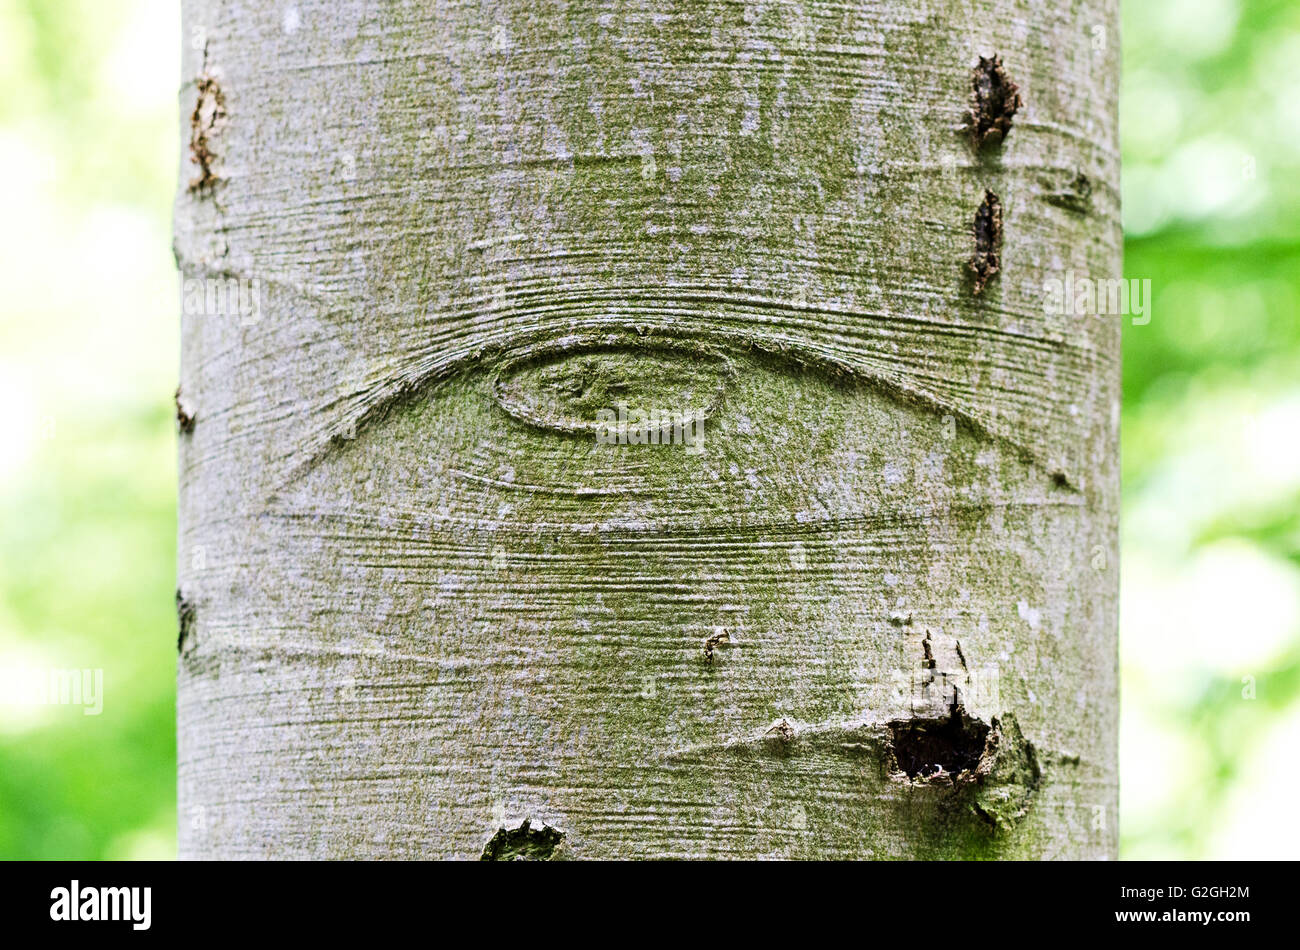 All-Seeing Eye de Dieu sur une écorce d'arbre, aussi appelé l'Œil de la Providence. Symbole de l'œil de Dieu, qui veille sur l'humanité. Banque D'Images